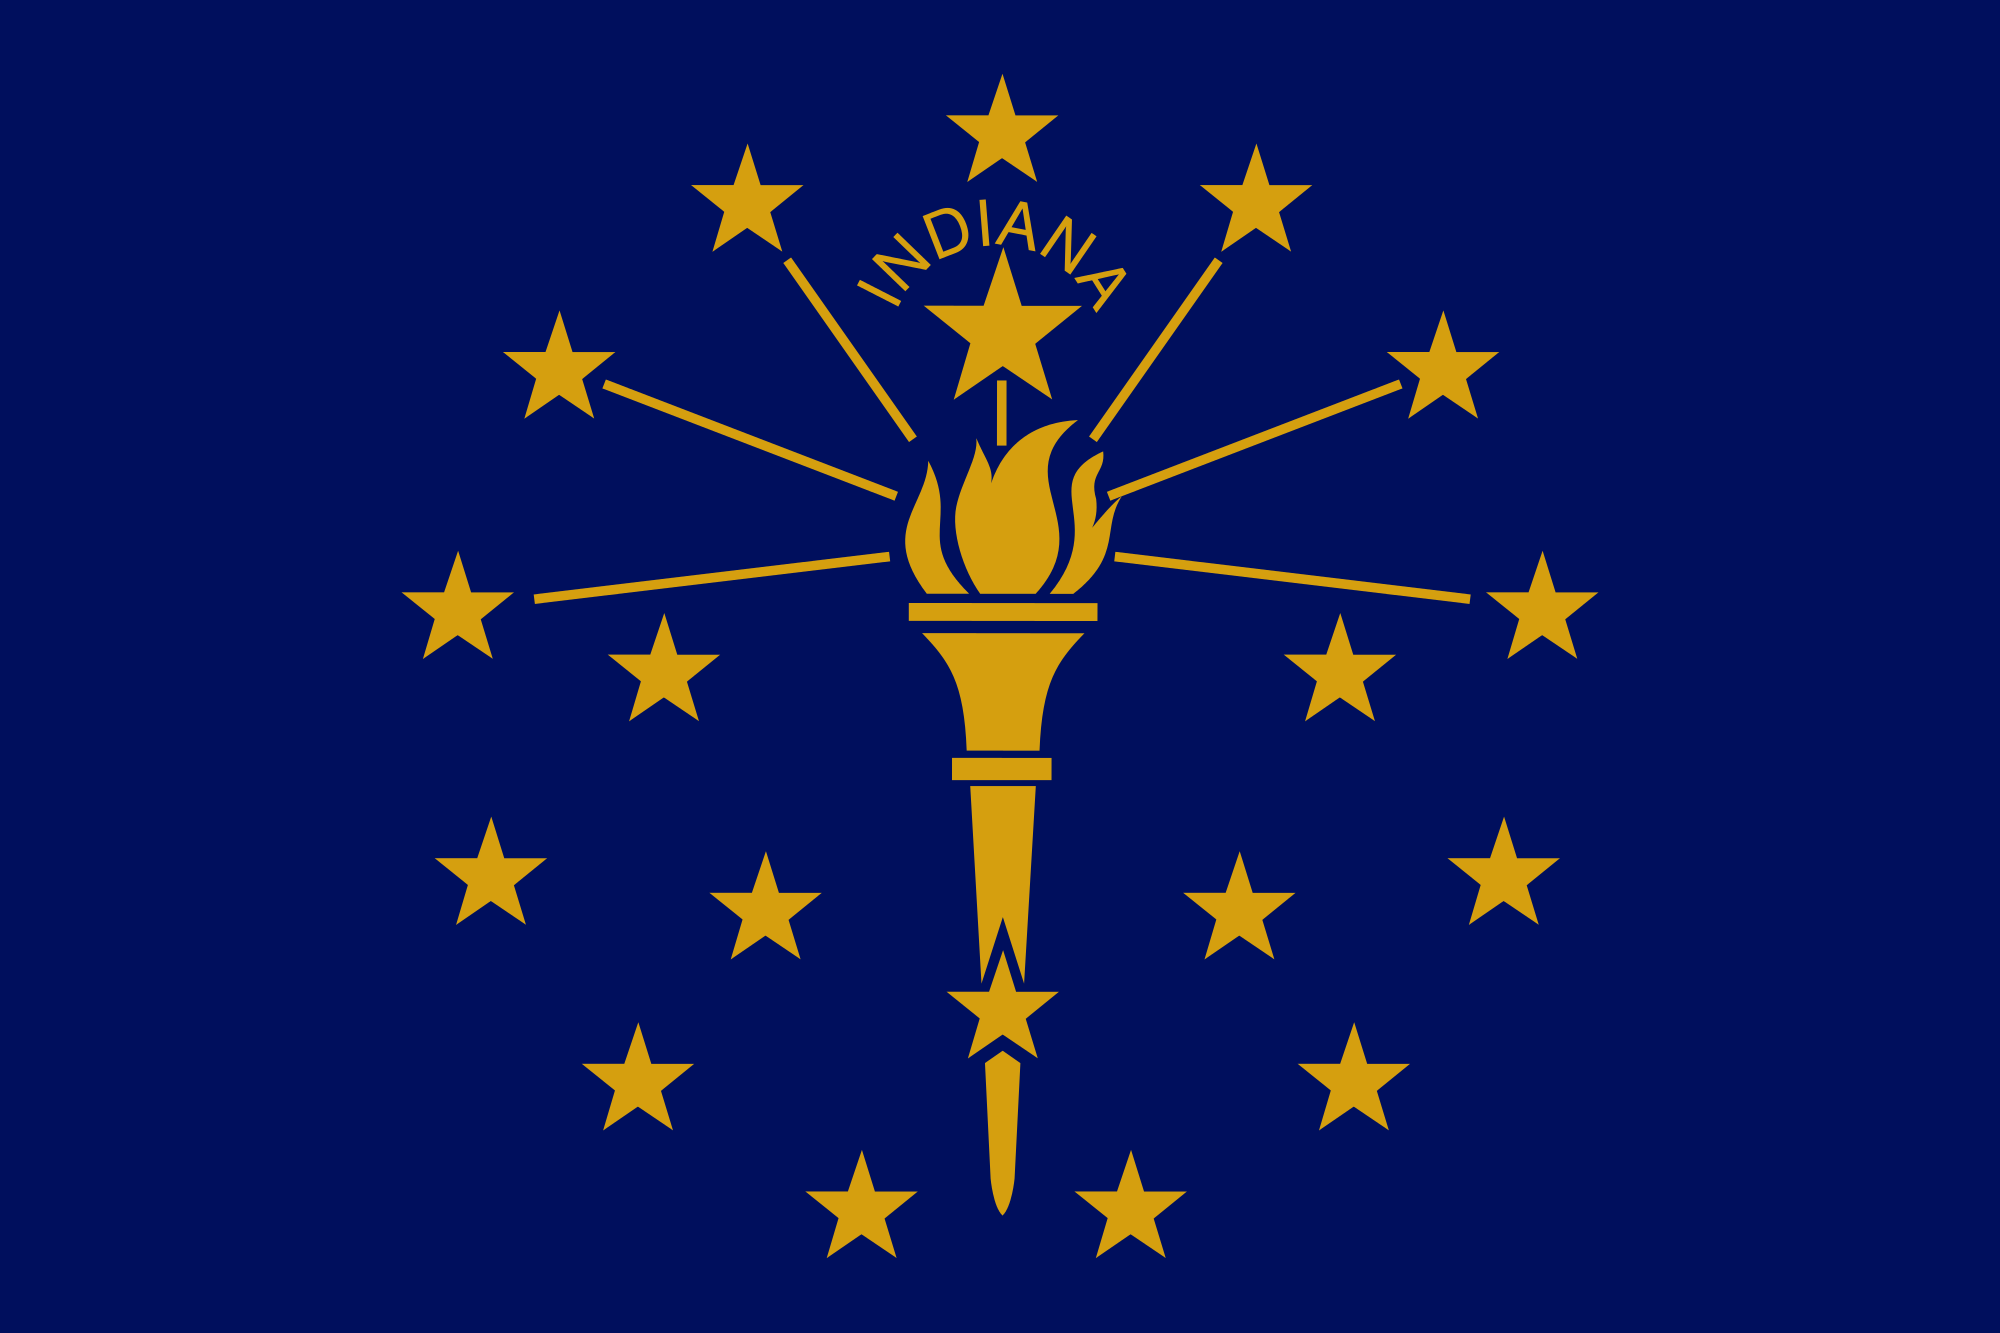 Indiana Vintage Wood Flag